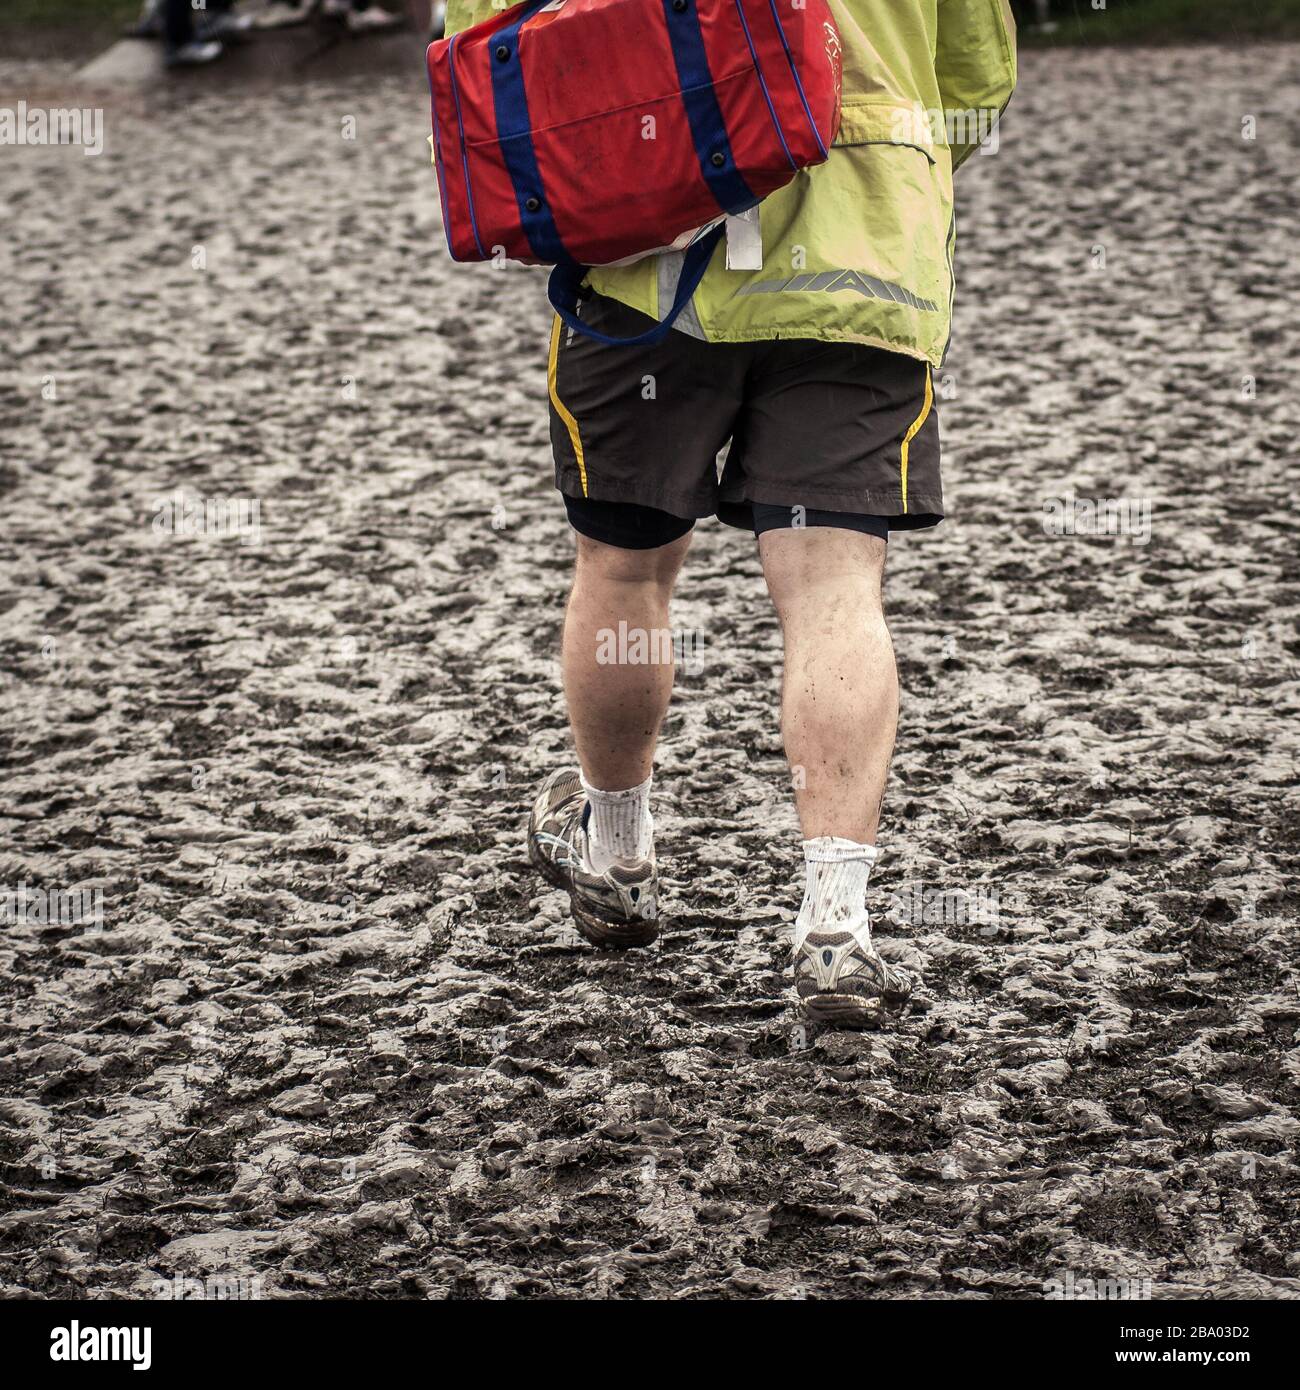 man walking in sportswear in muddy field Stock Photo